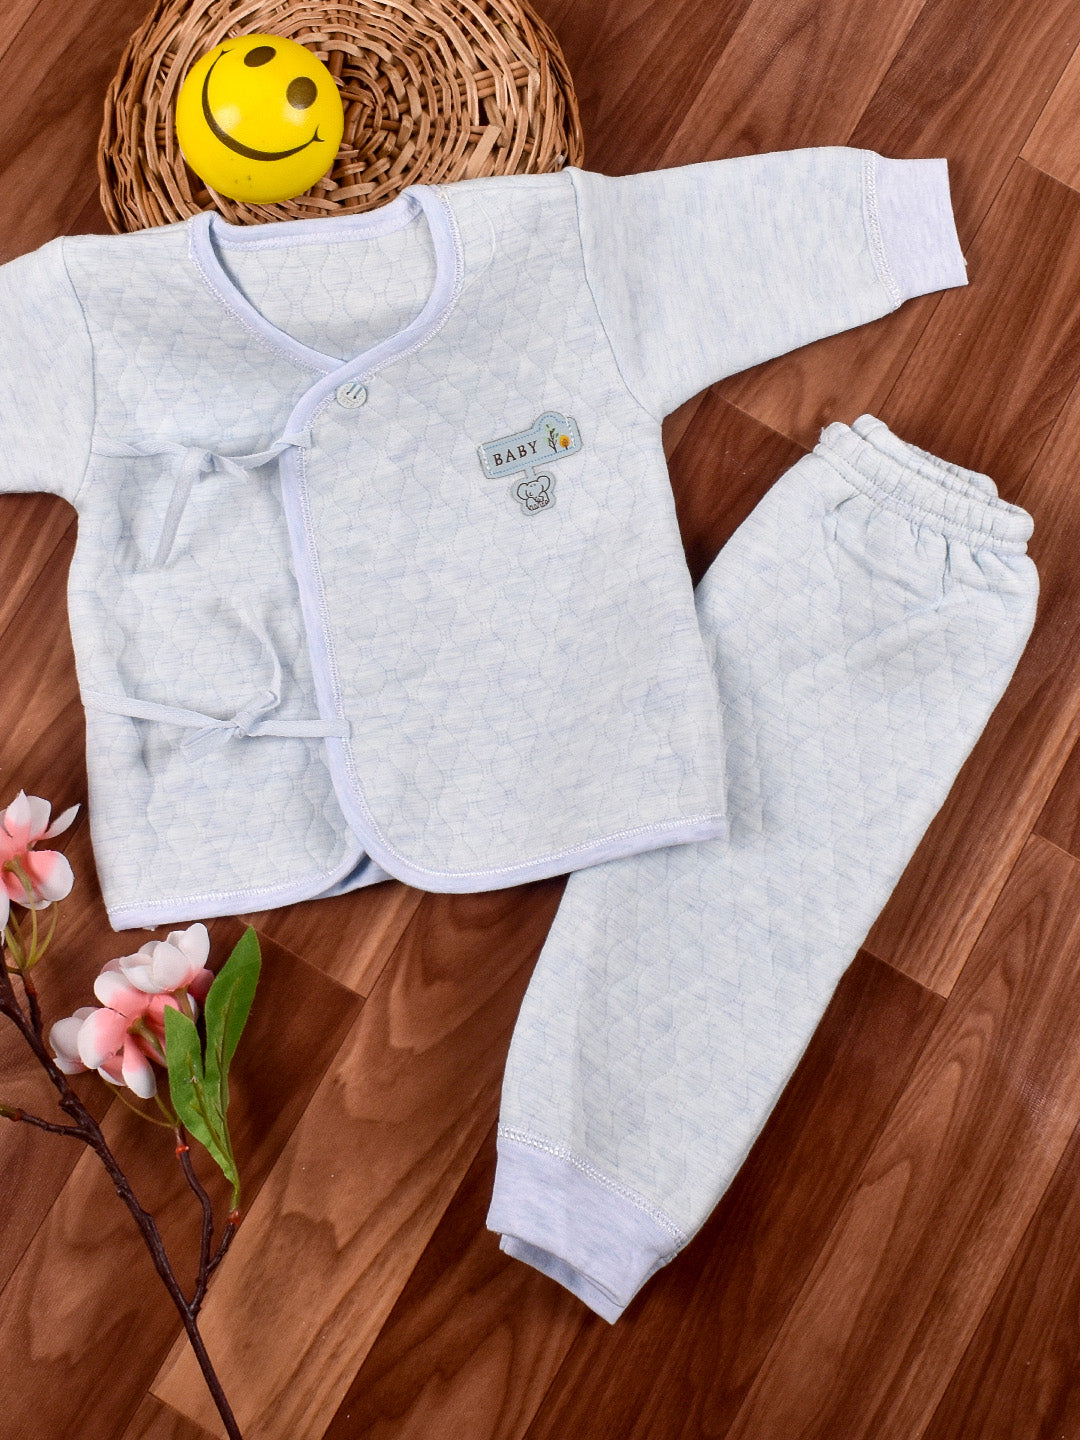 Newborn Baby's Warm Cotton Gift Set-1 Pajama and 1 Shirt- Blue